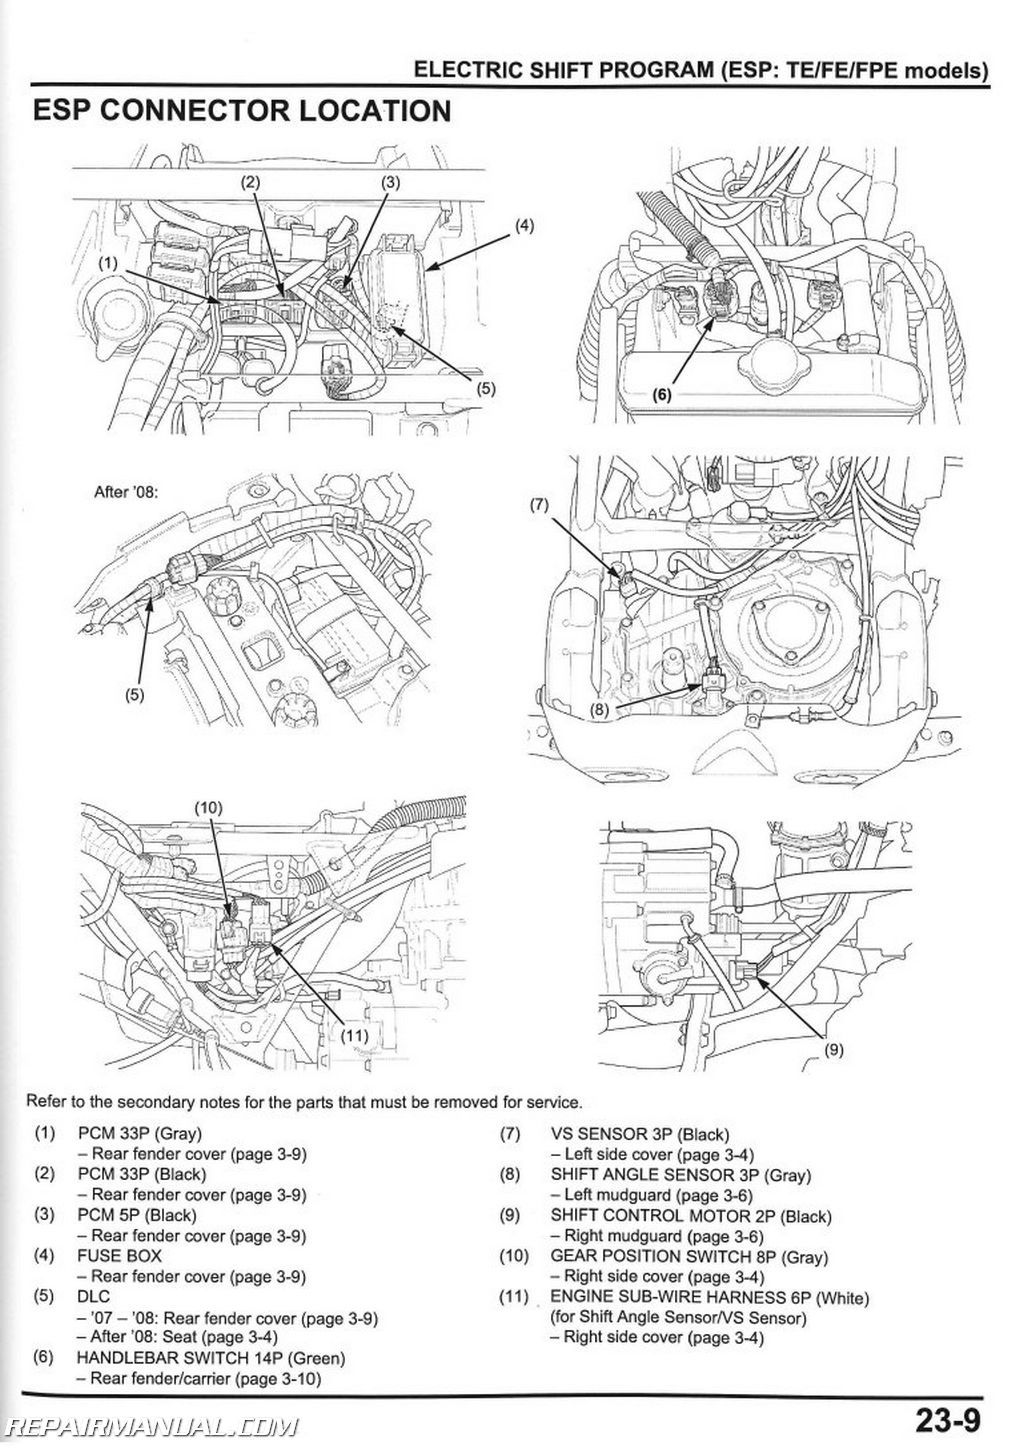 2008 Honda rancher wiring schematic #1